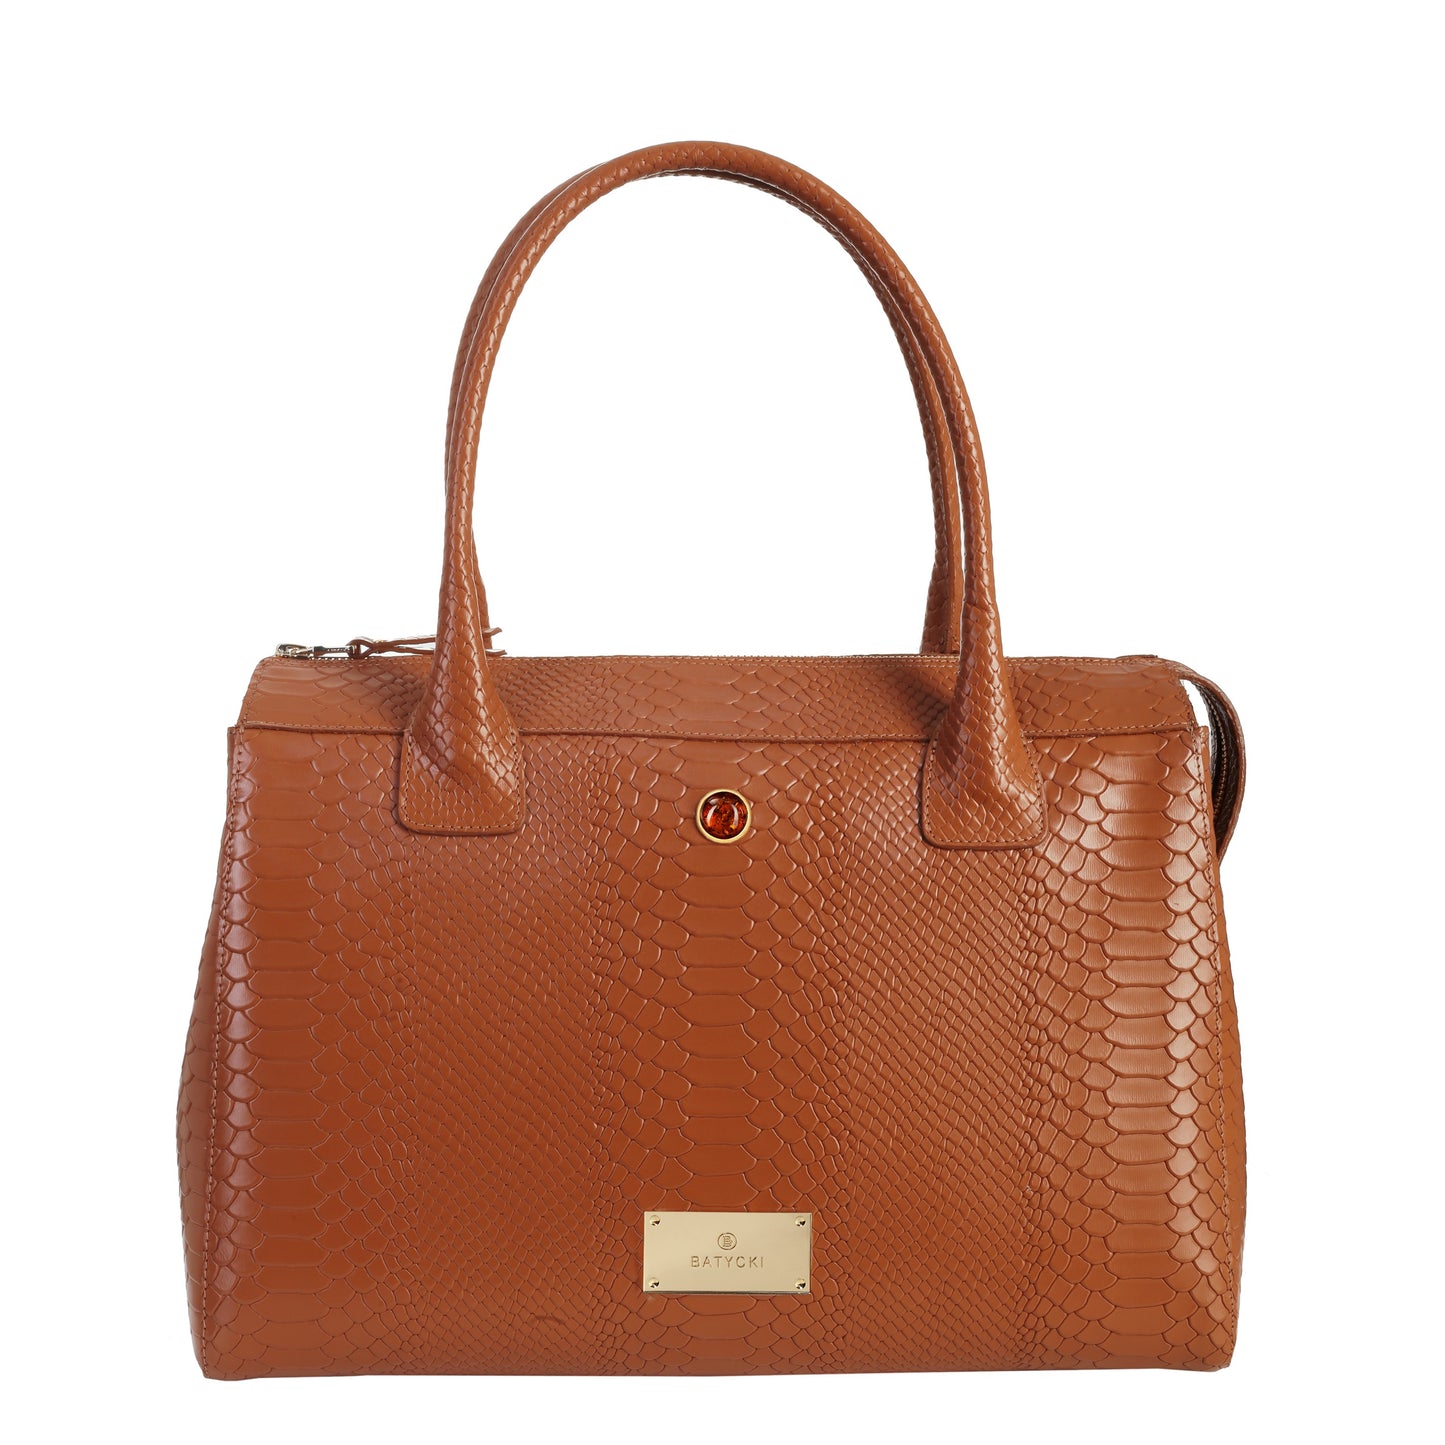 JADE COGNAC women's leather handbag